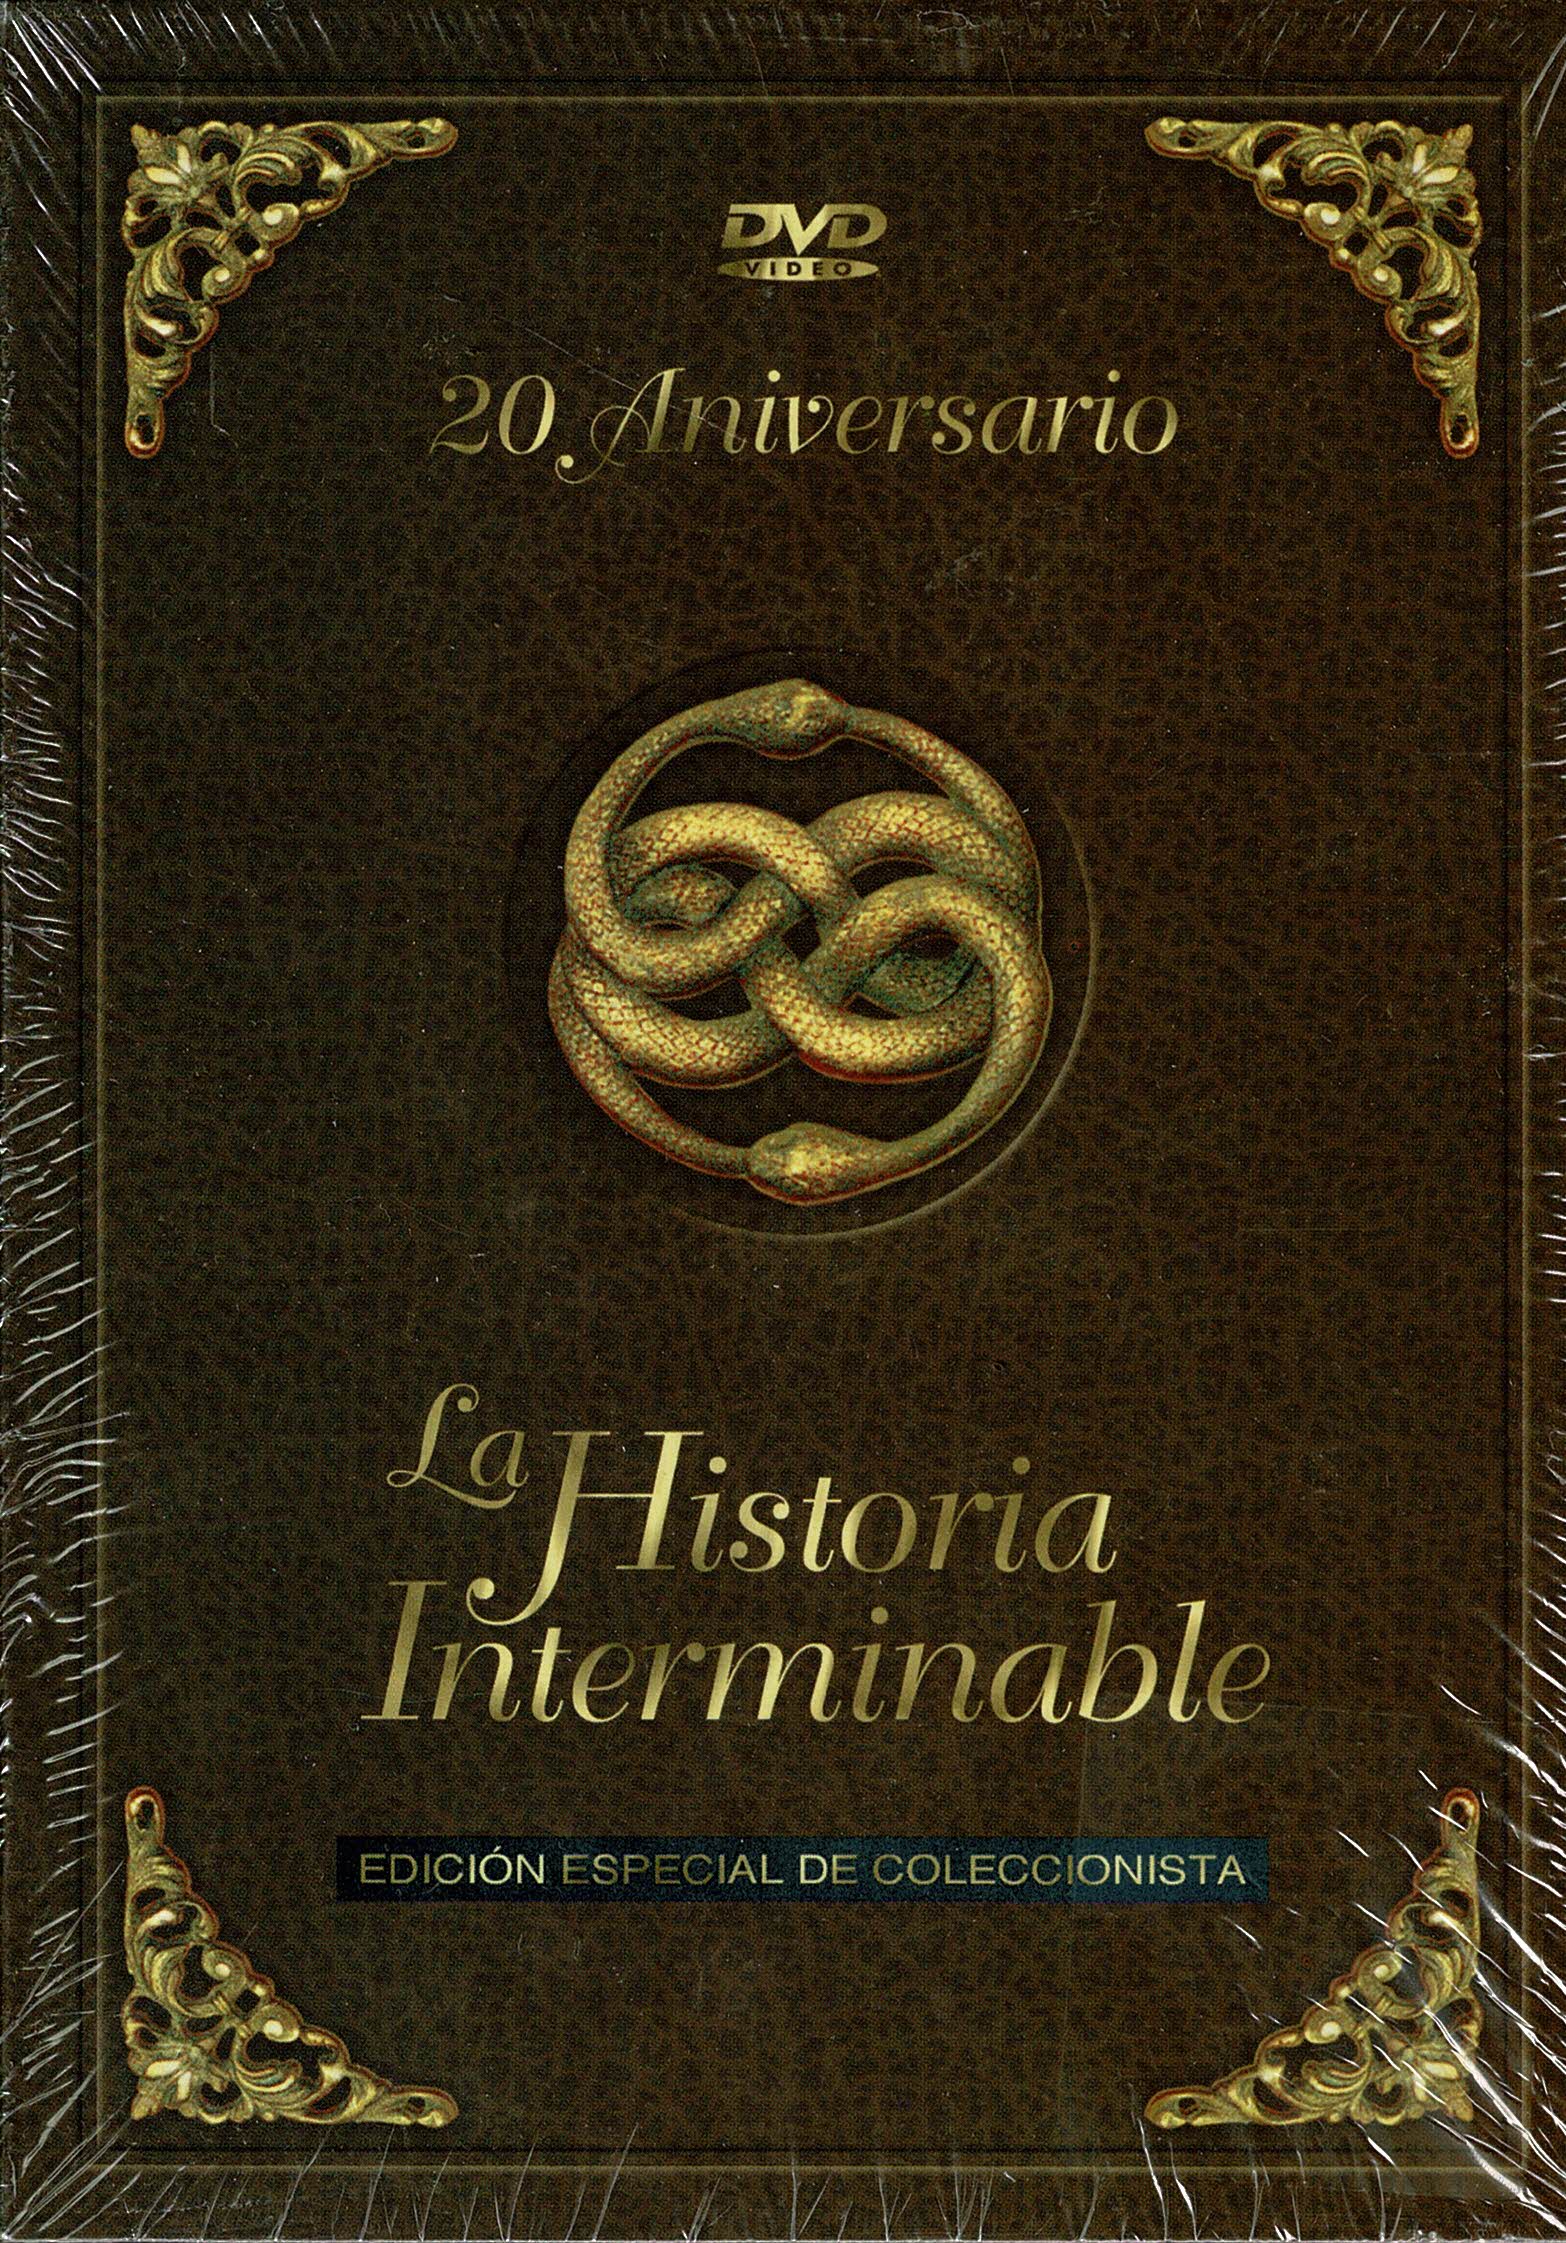 LA HISTORIA INTERMINABLE DE MICHAEL ENDE LIBRO EDICION AÑO 1985 EN TAPA  DURA